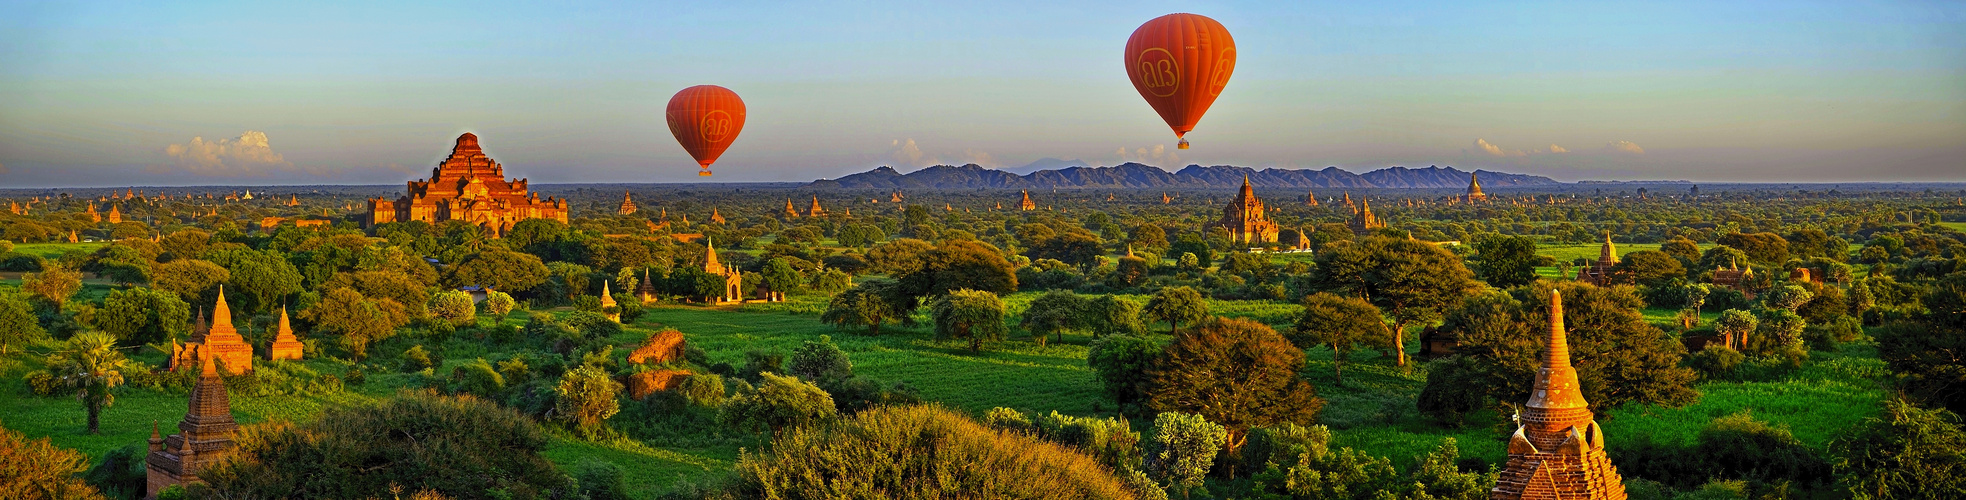 Bagan Panorama_1040-1043a